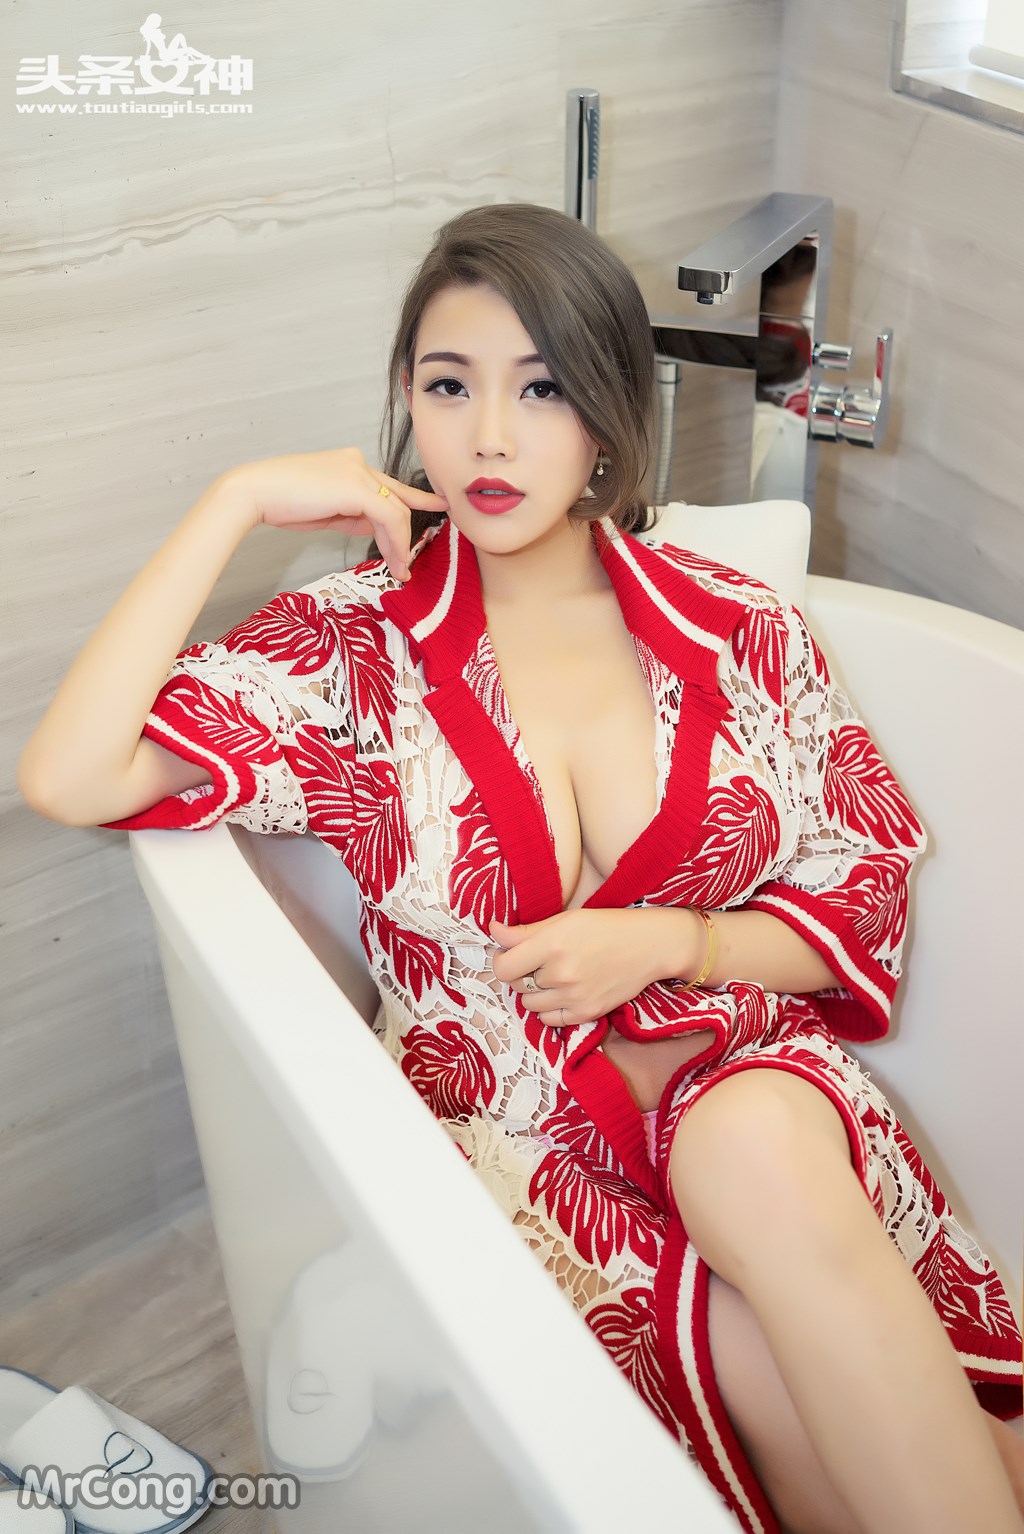 TouTiao 2016-06-12: Model Yang Yang (阳阳) (45 photos)